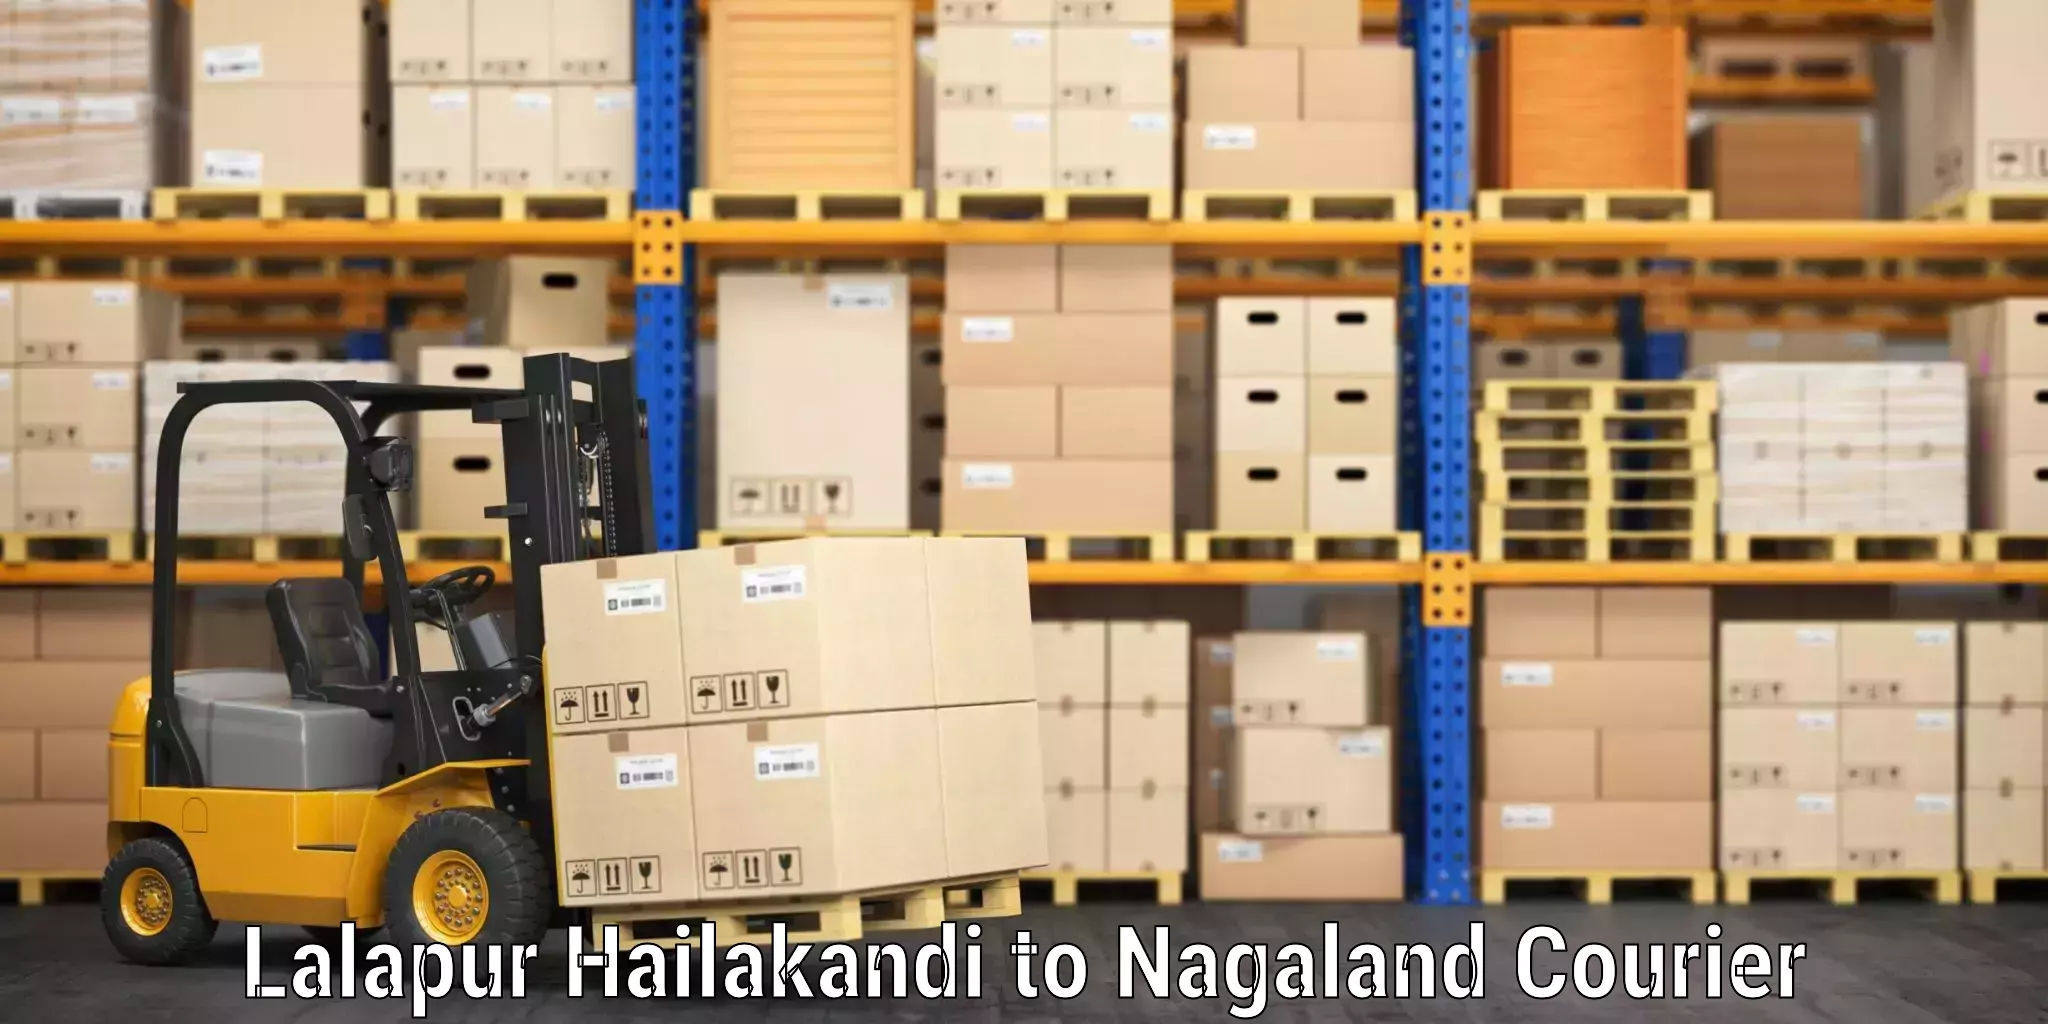 Baggage shipping service Lalapur Hailakandi to Longleng